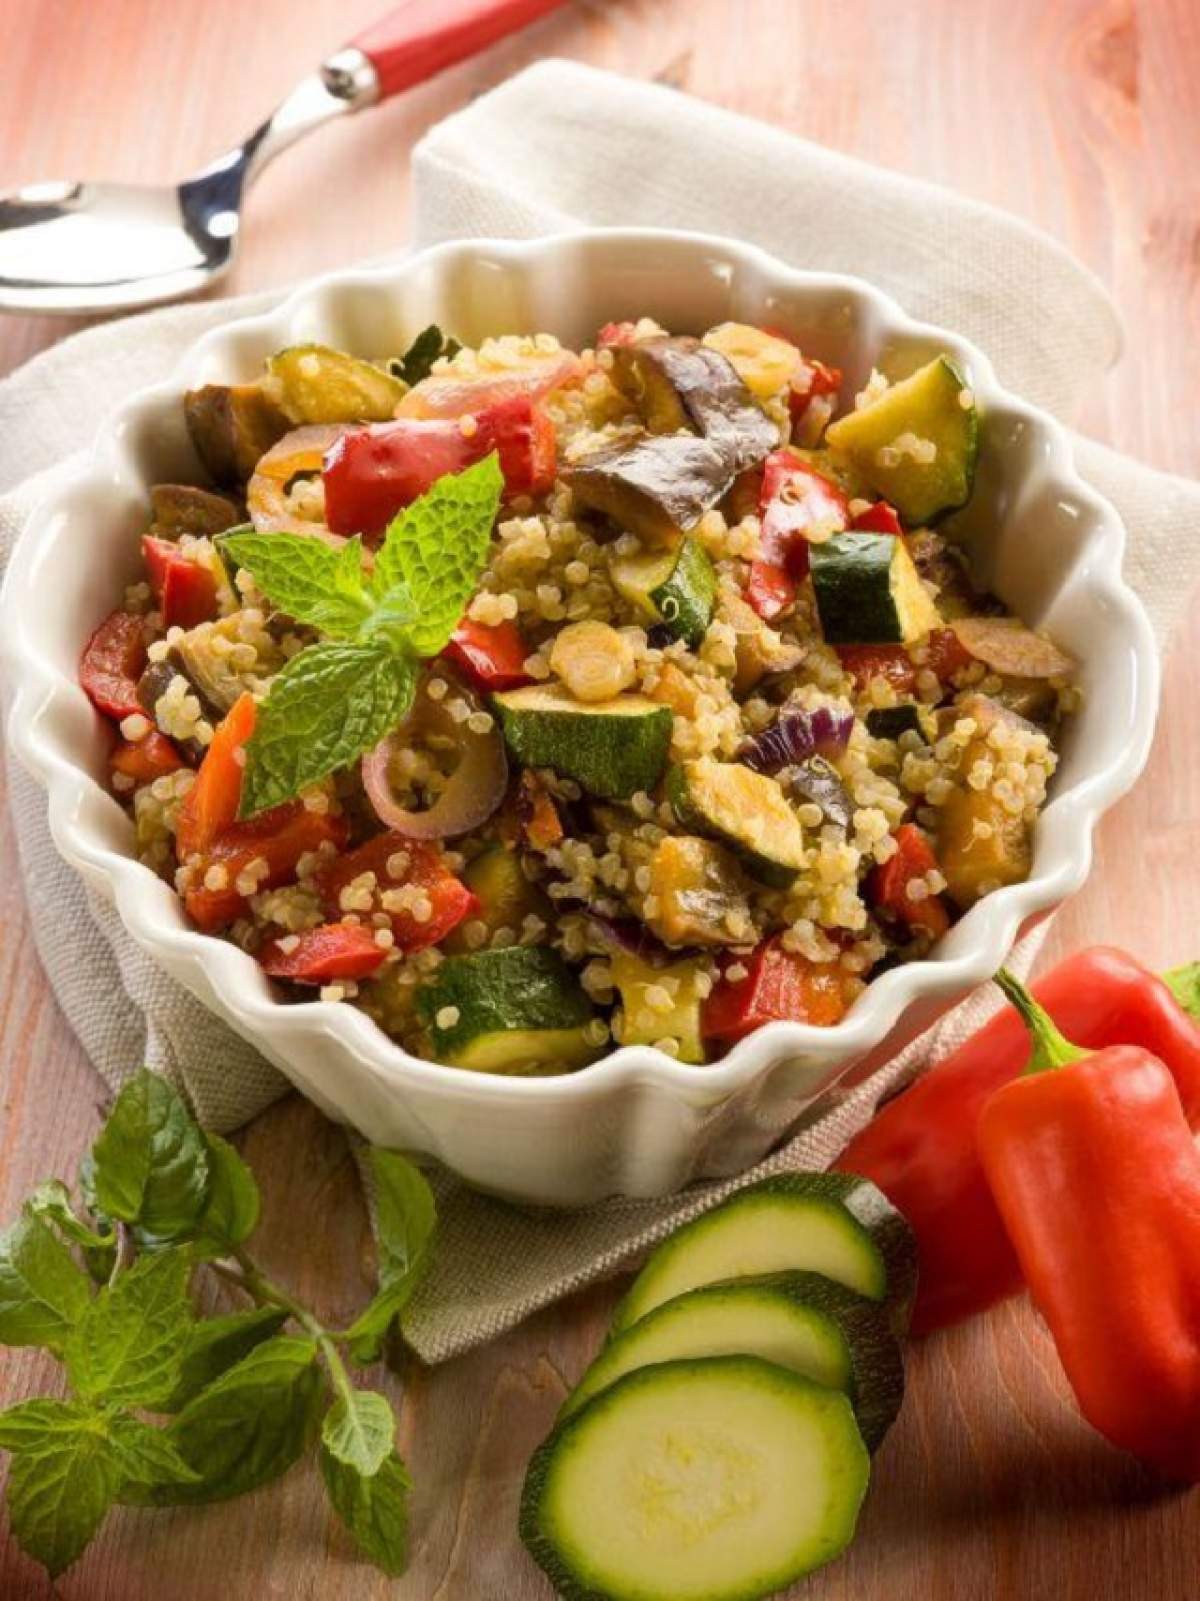 REŢETA ZILEI: JOI - Salată marocană